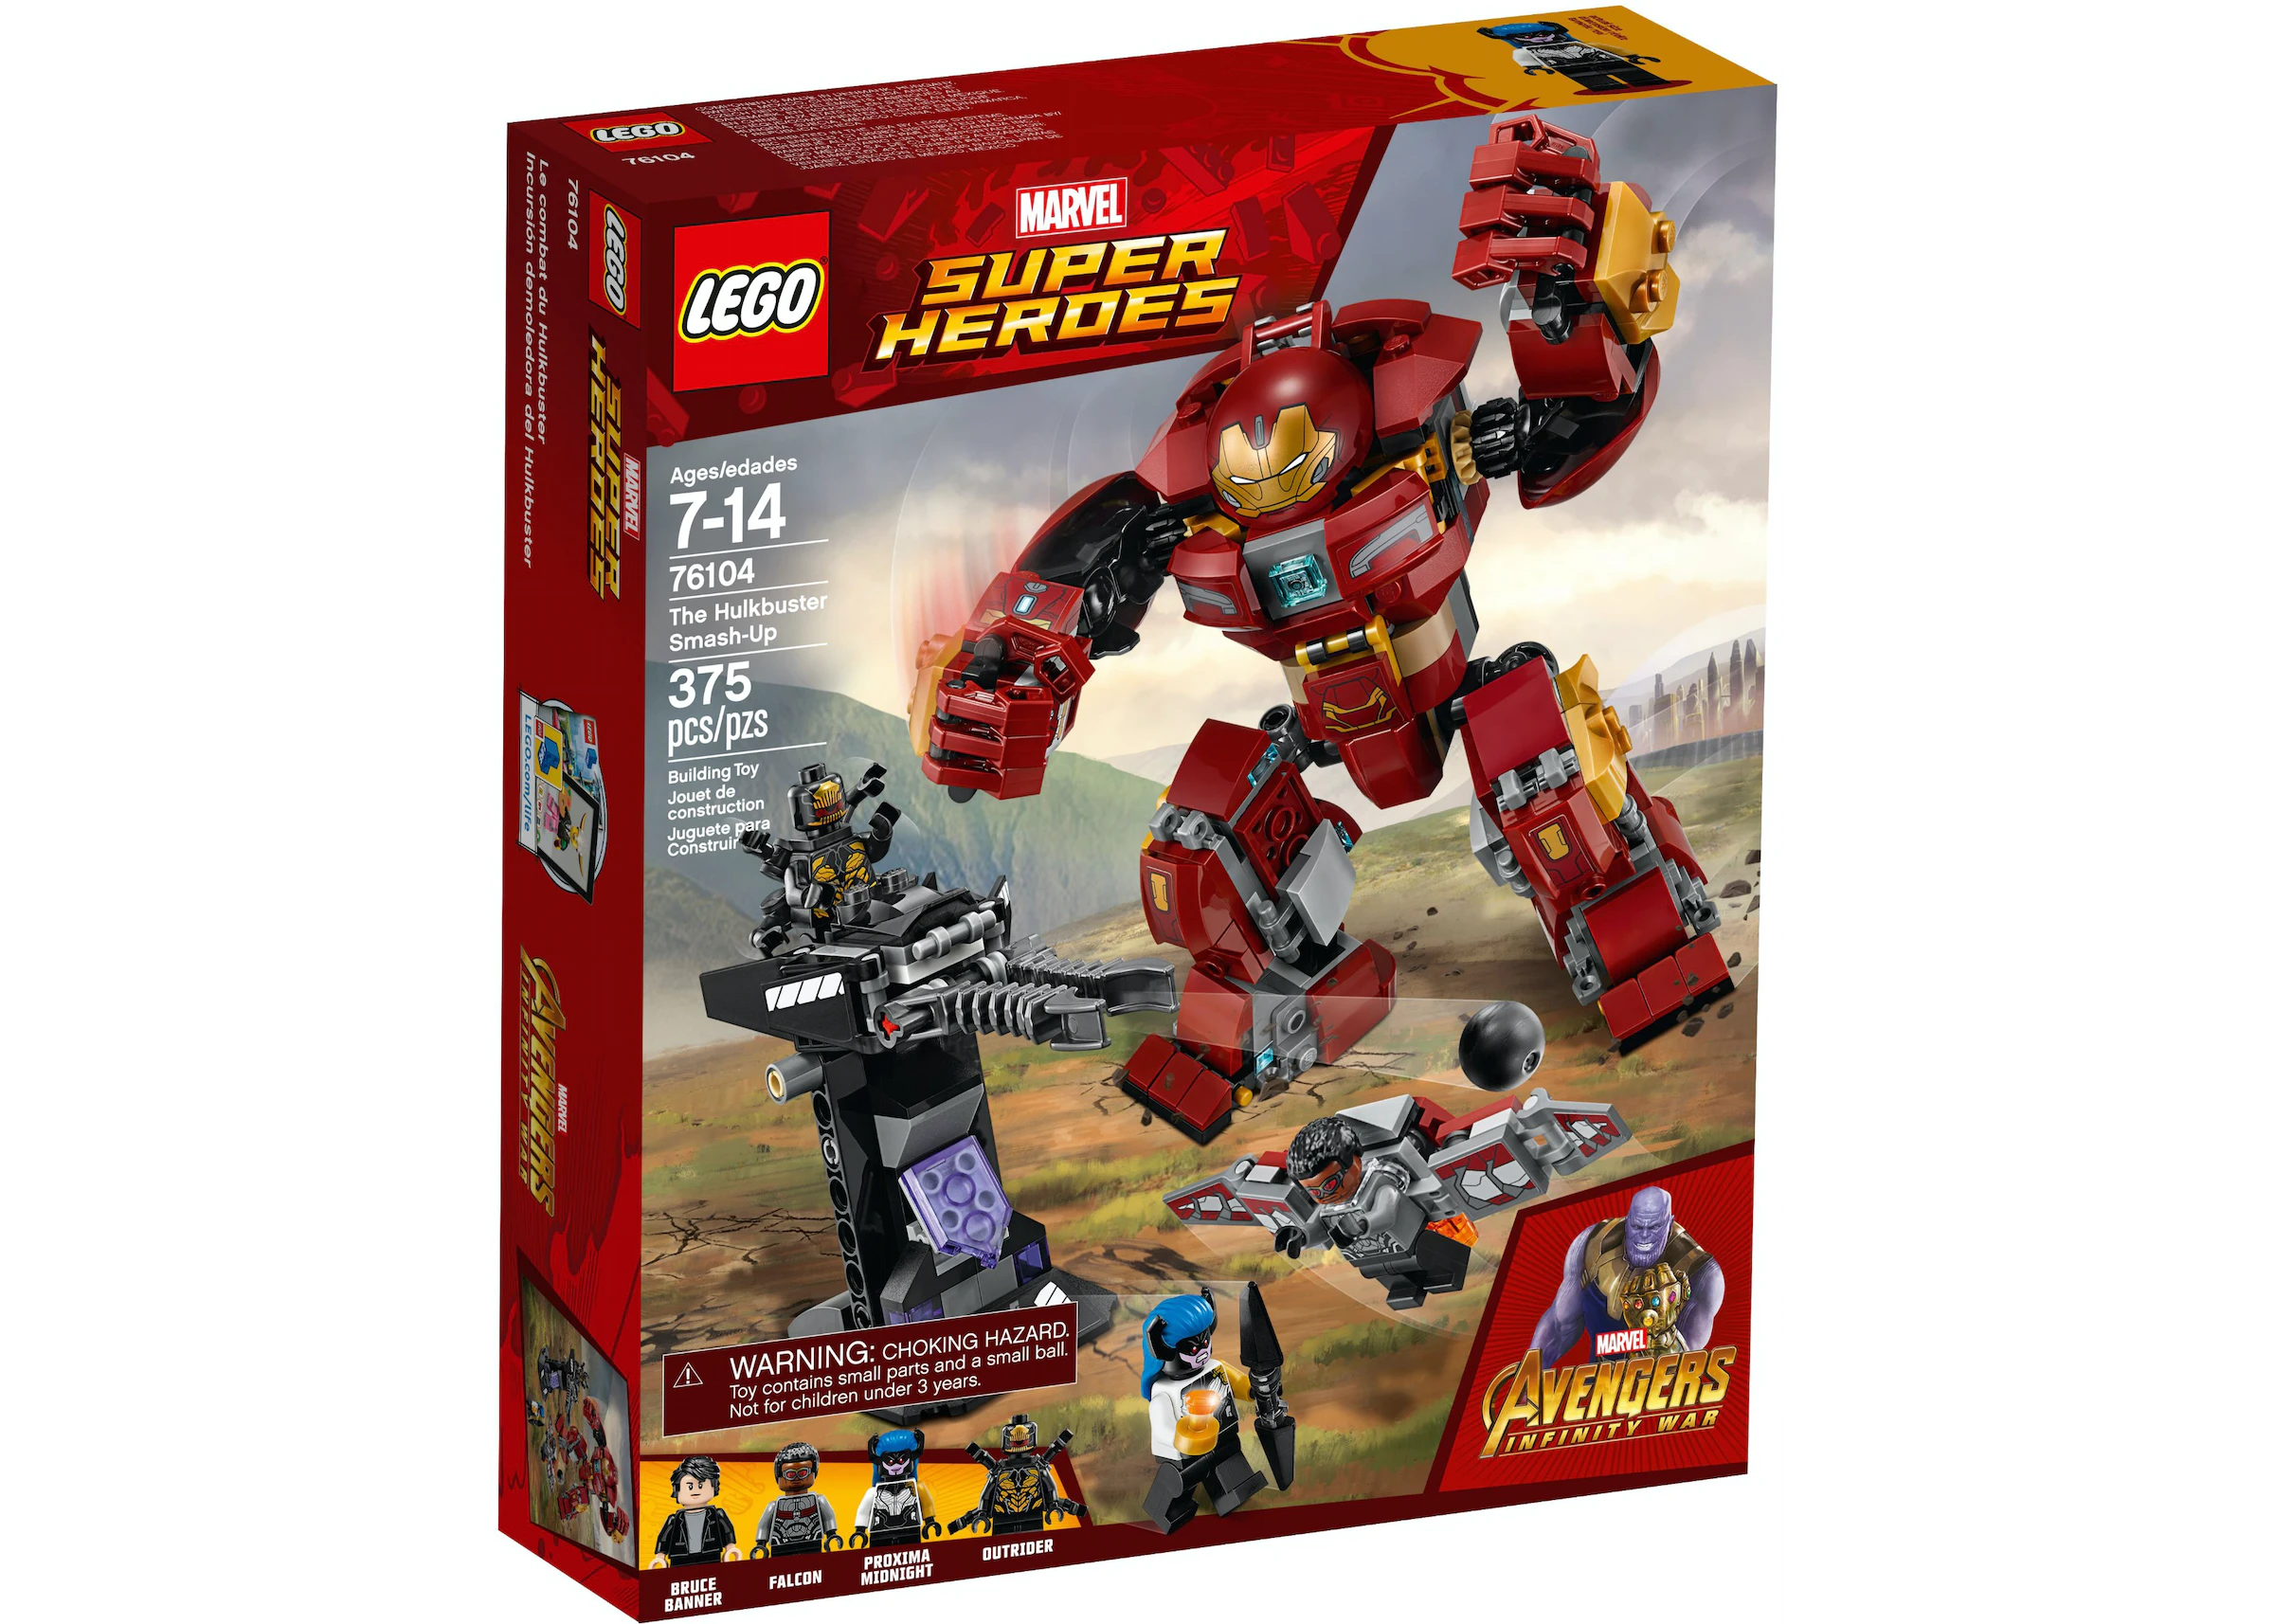 LEGO Marvel Super Heroes Avengers War The Hulkbuster Smash-Up Set